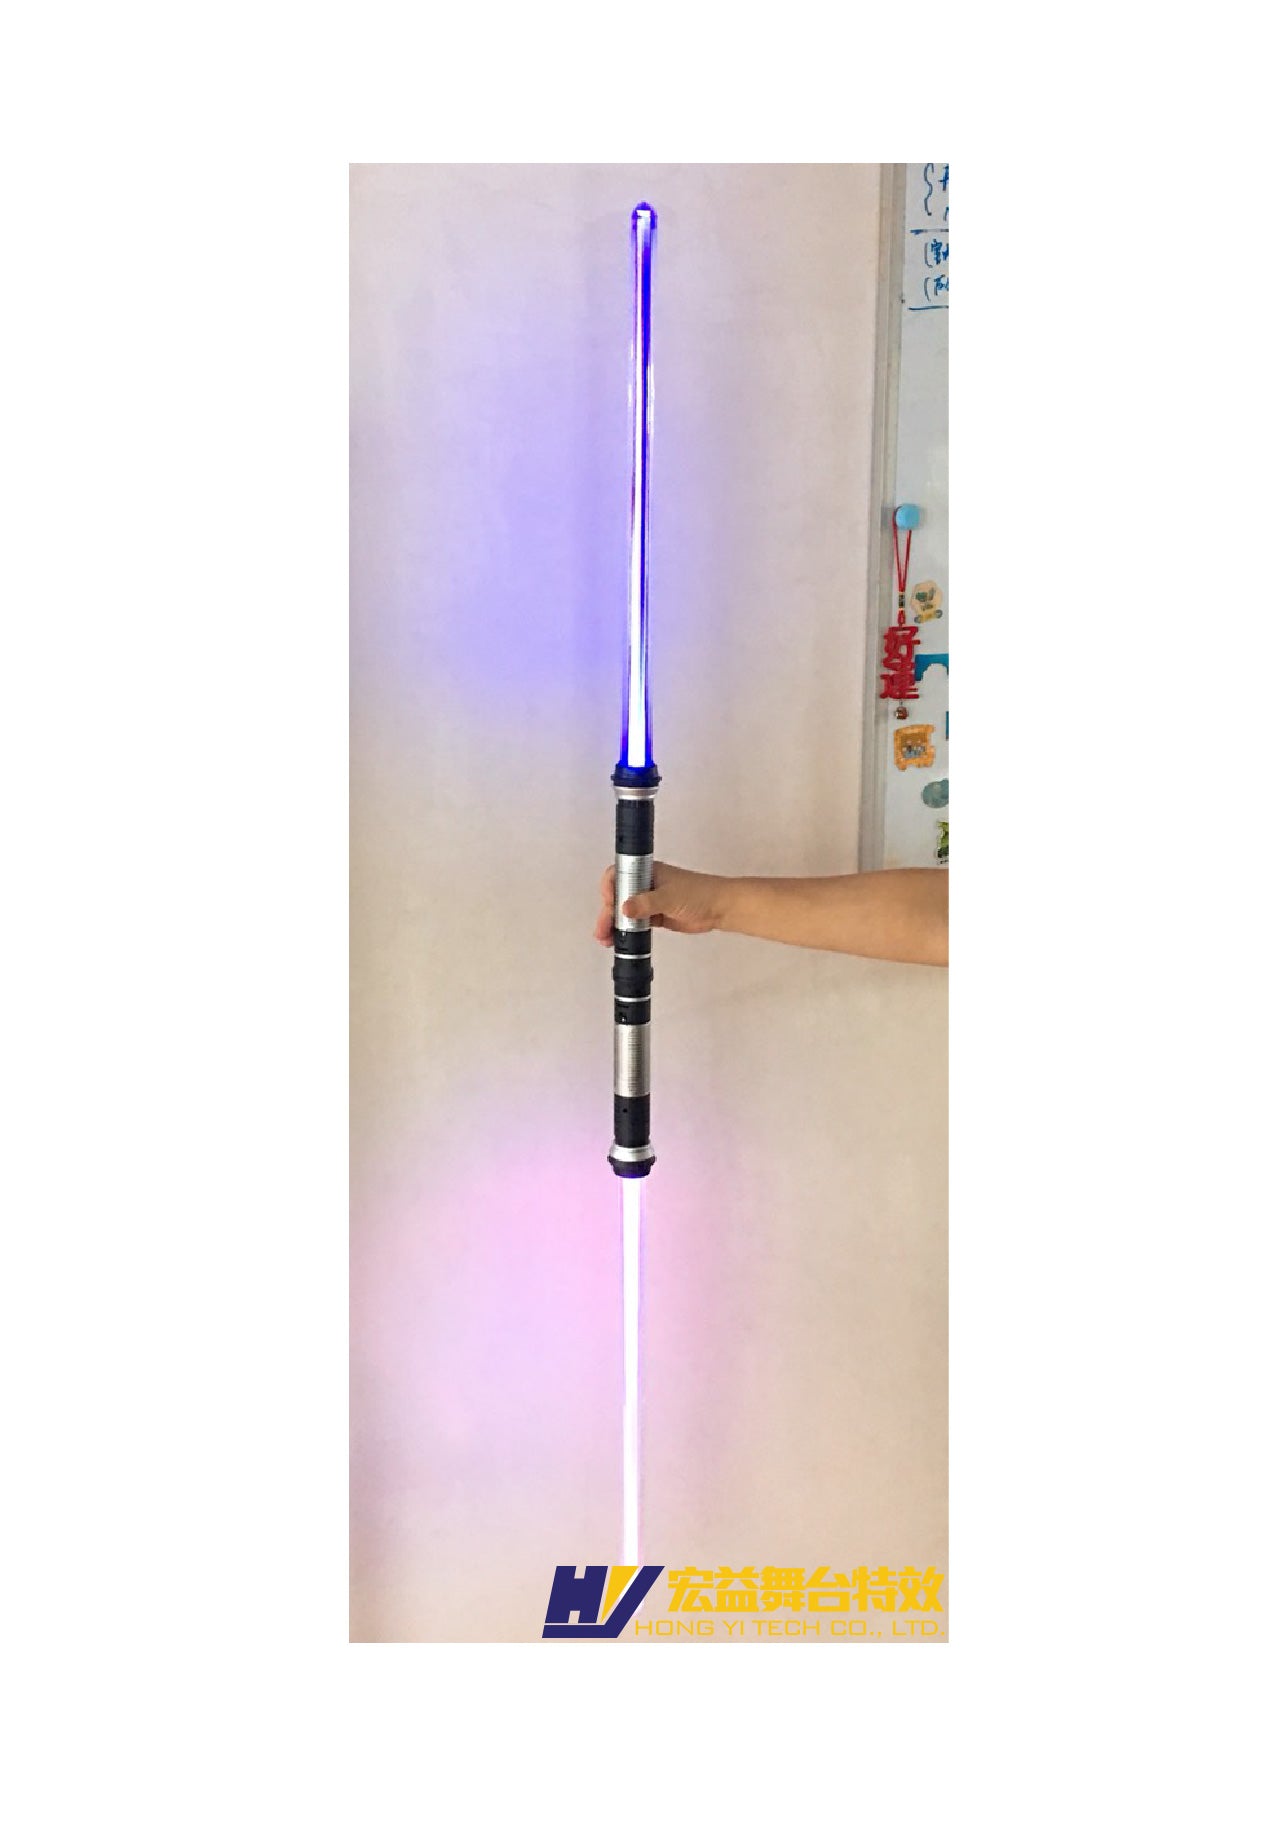 4-6-4 光劍 (LED Sword Prop)